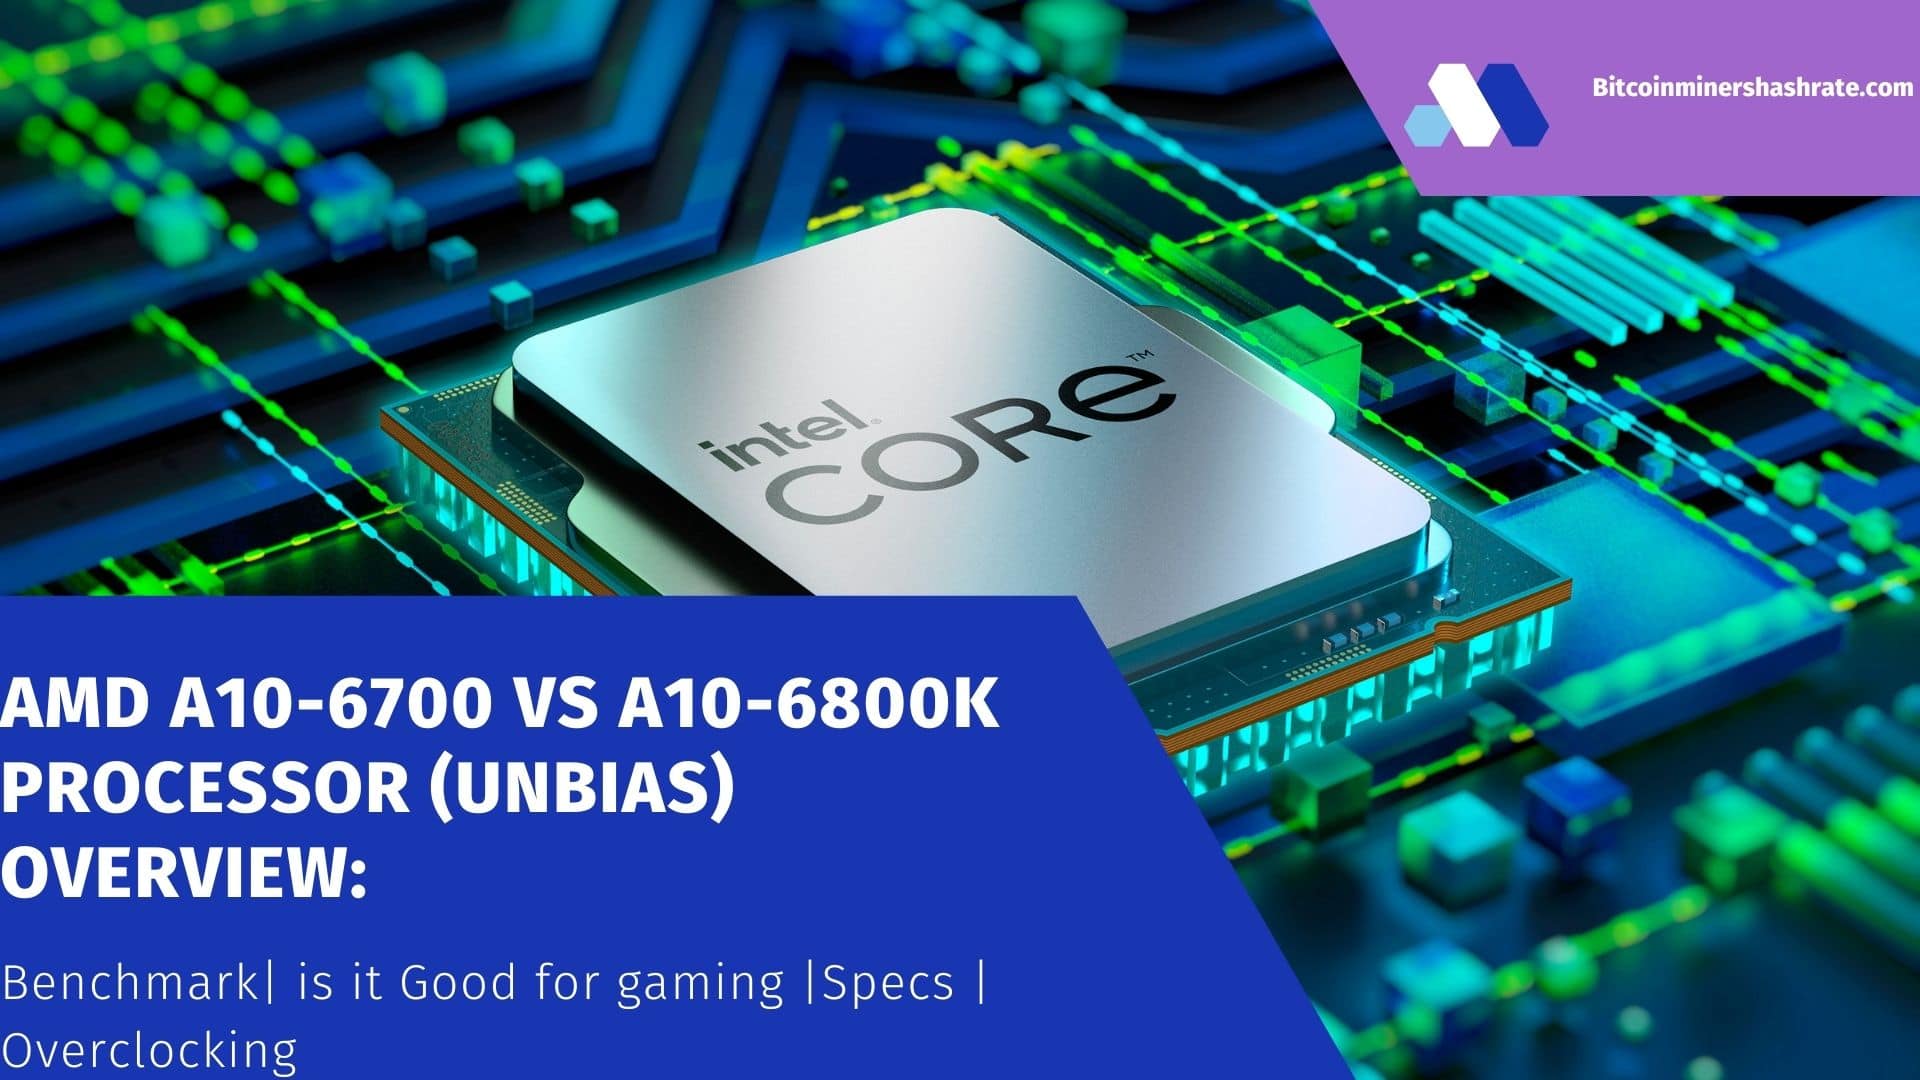 AMD A10-6700 vs A10-6800K Processor